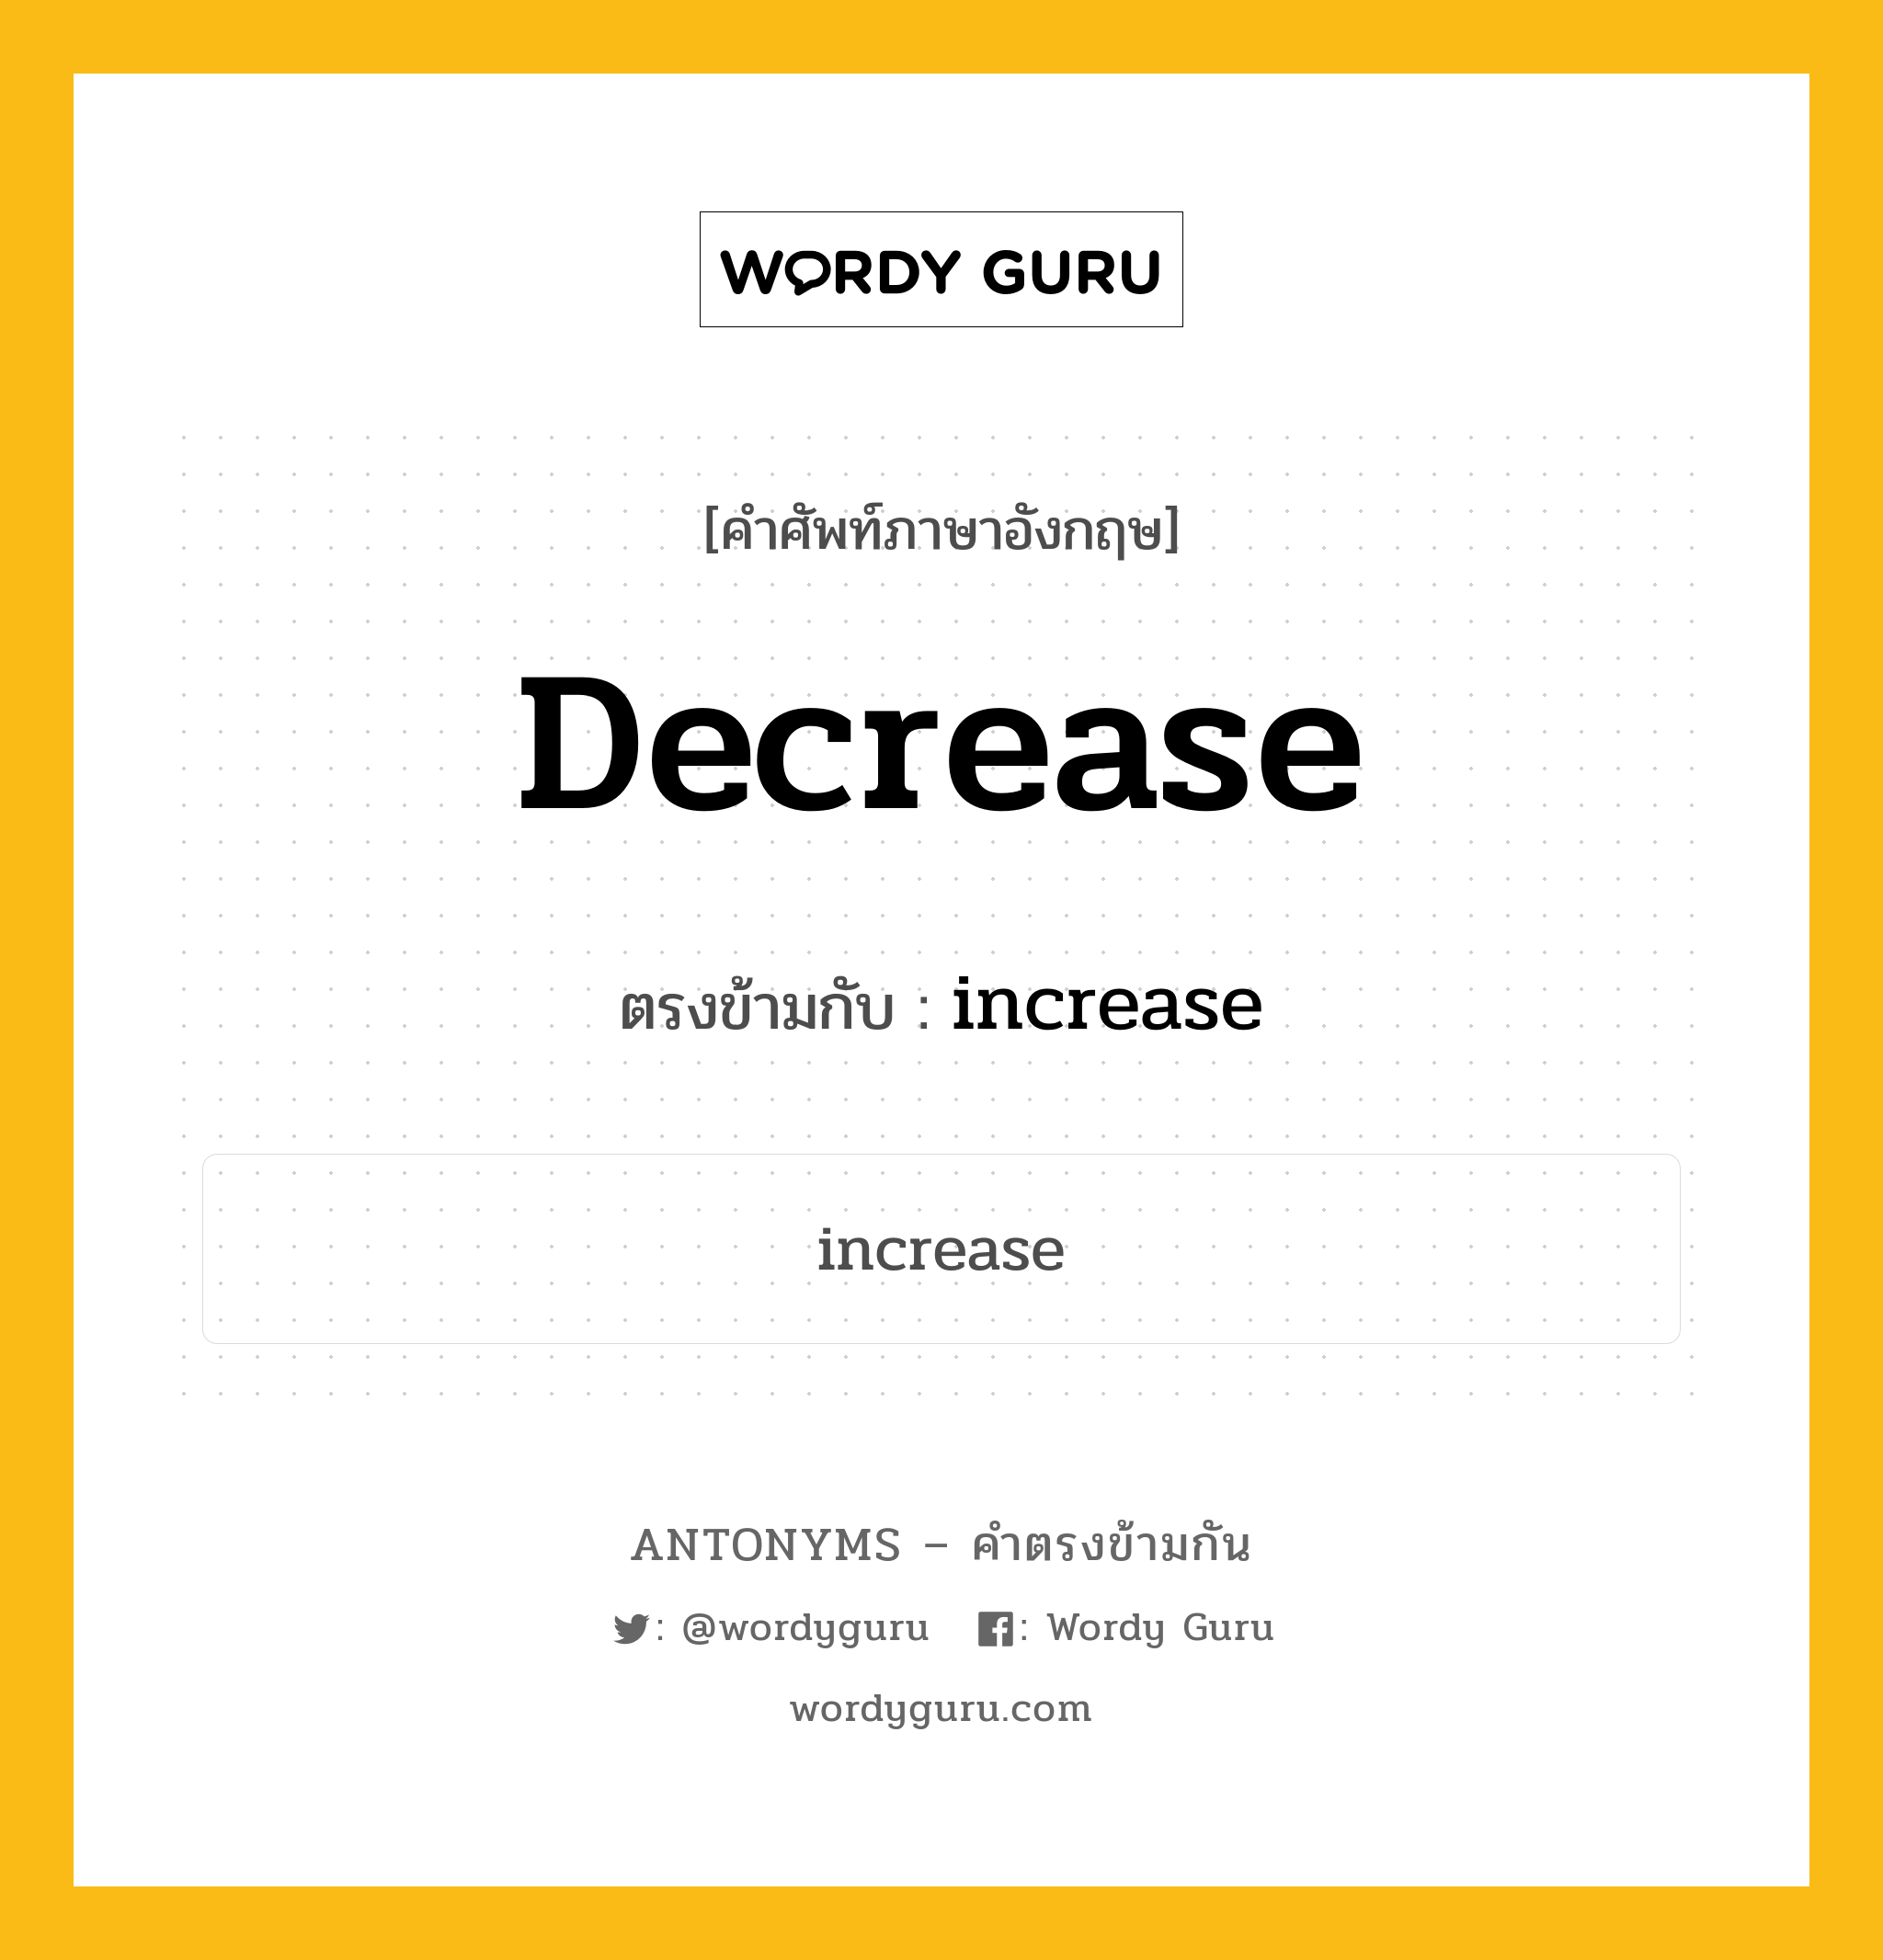 decrease เป็นคำตรงข้ามกับคำไหนบ้าง?, คำศัพท์ภาษาอังกฤษที่มีความหมายตรงข้ามกัน decrease ตรงข้ามกับ increase หมวด increase